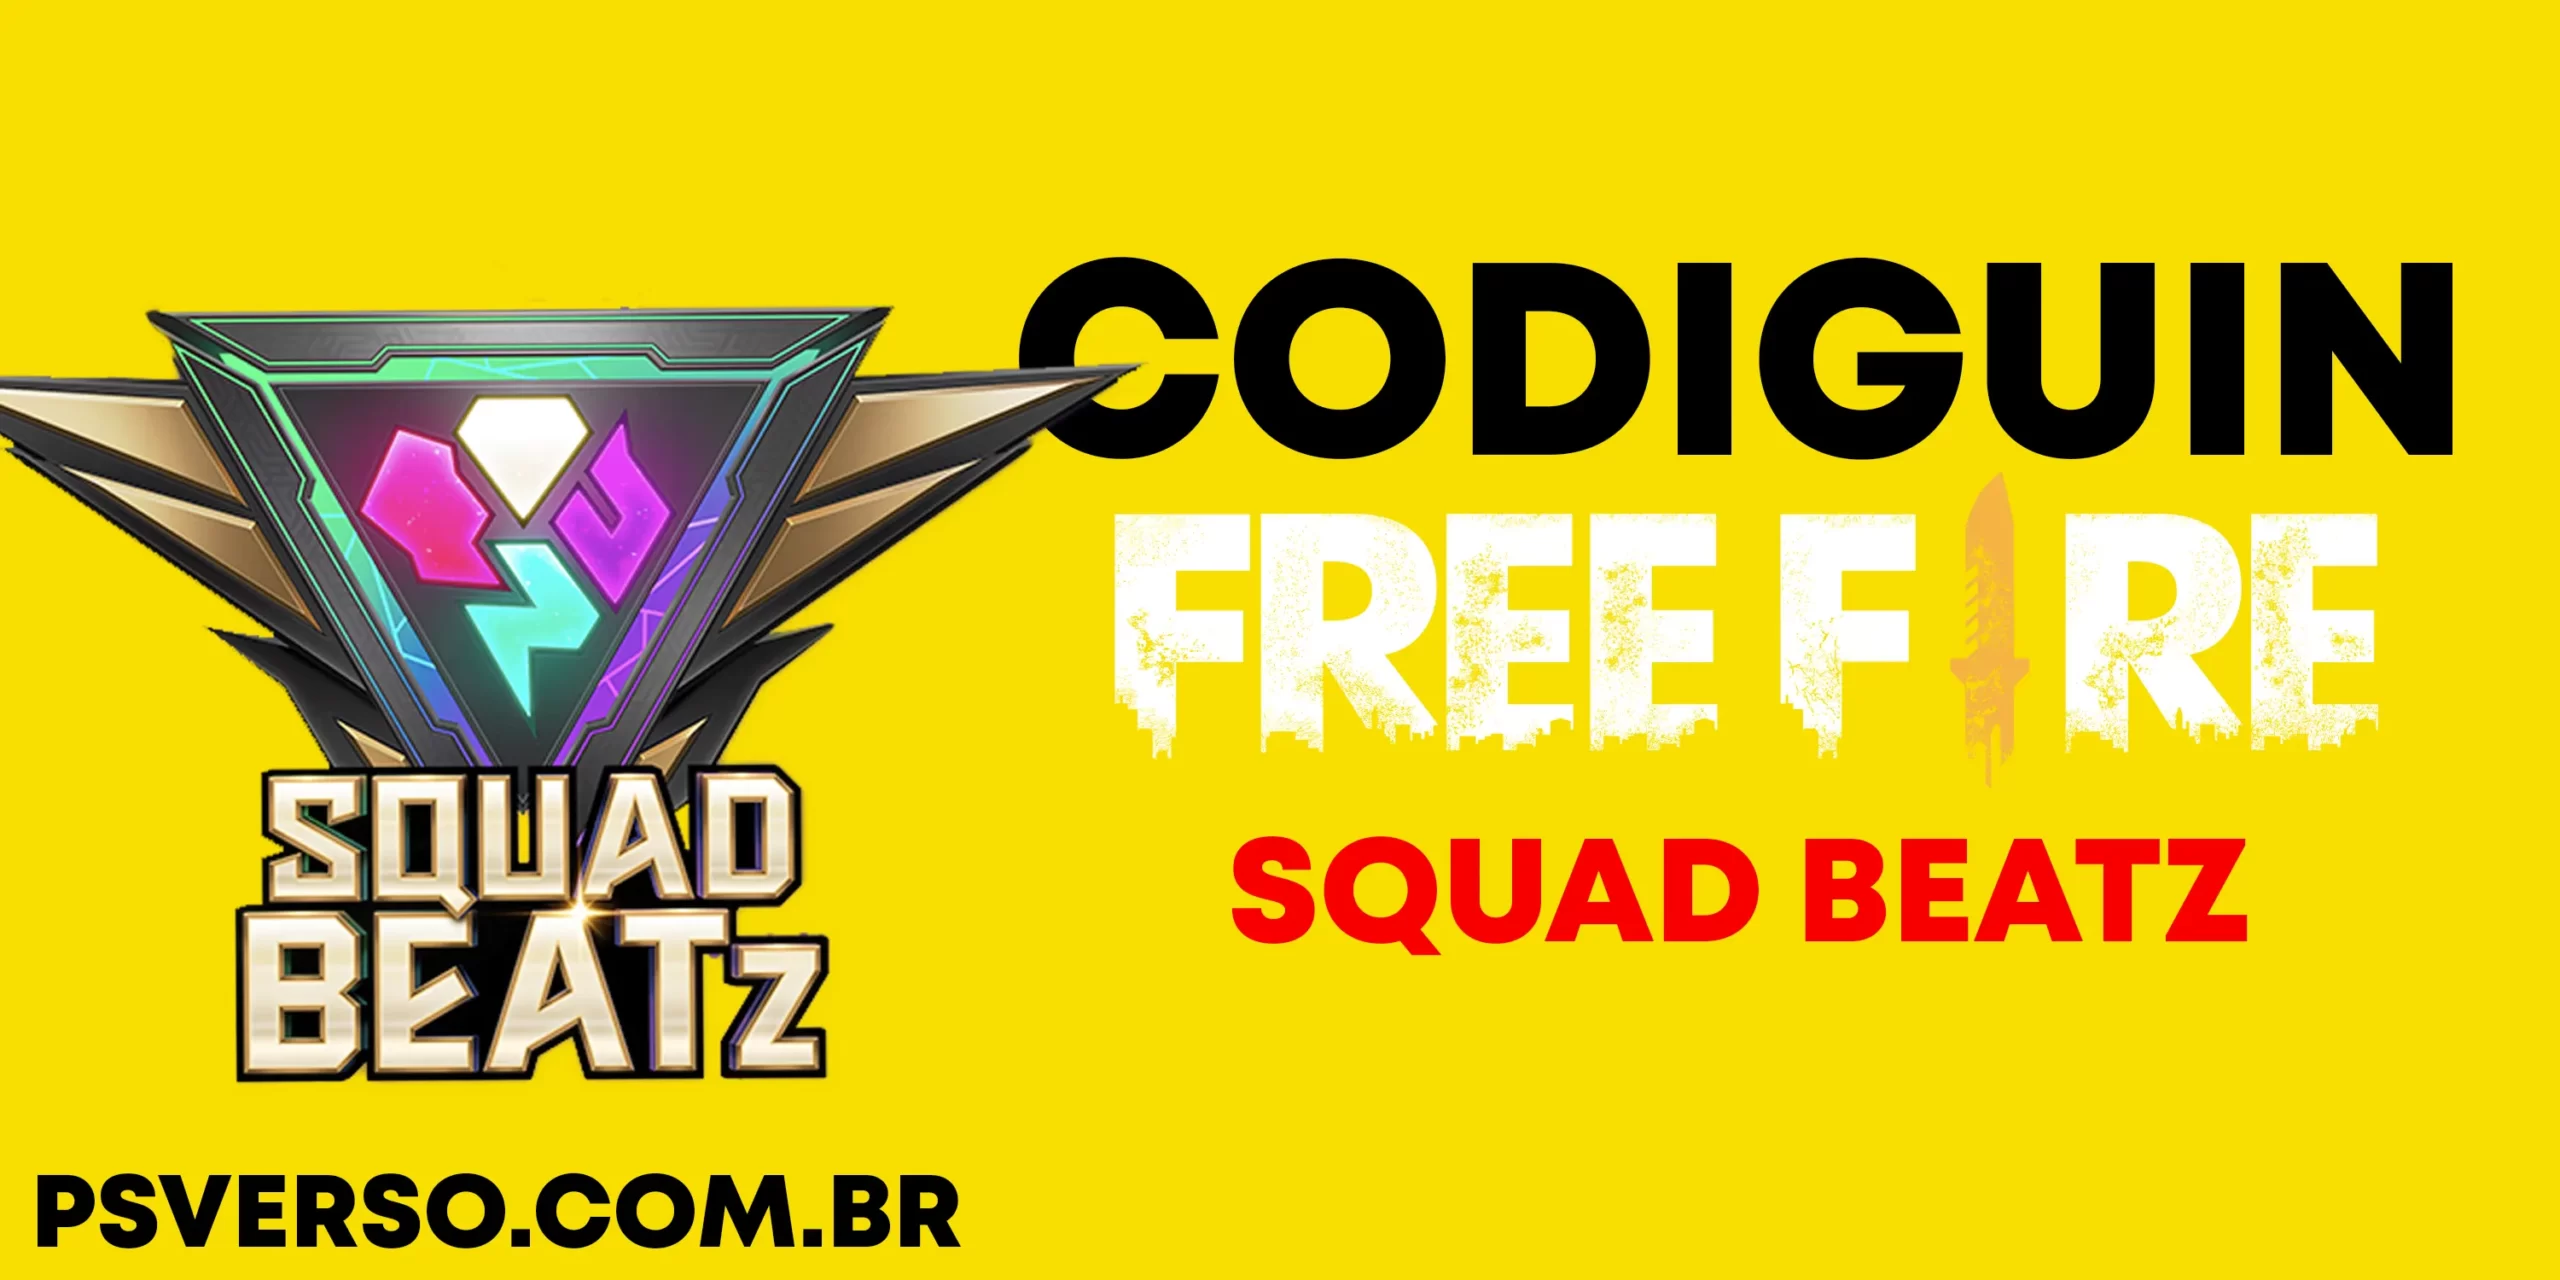 CODIGUIN FF: últimos códigos Free Fire do Squad Beats válidos em